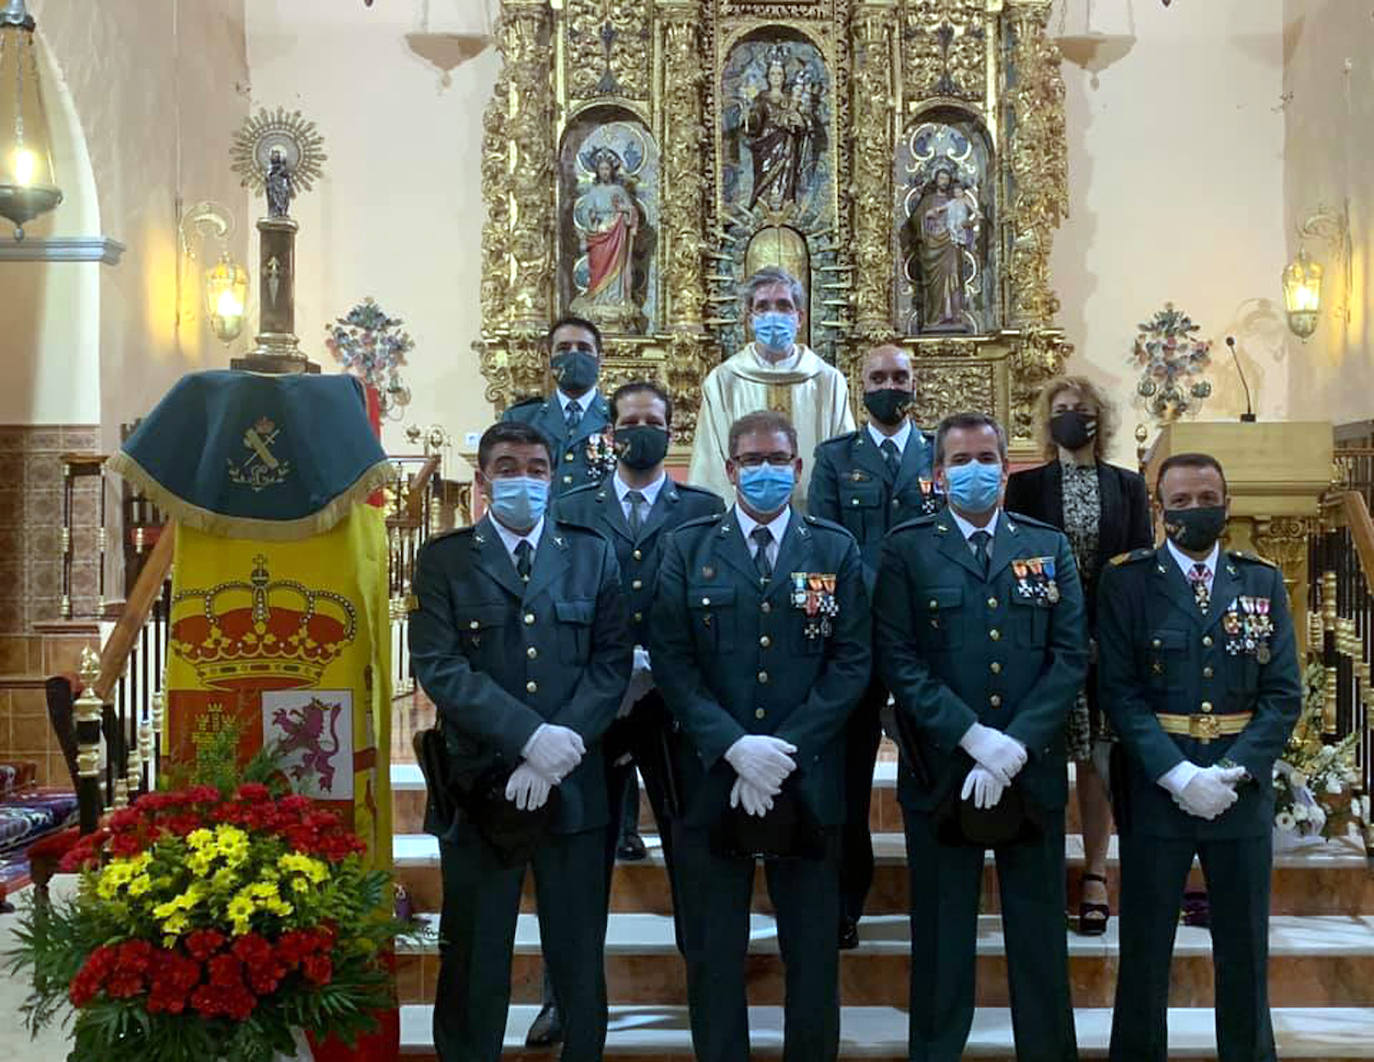 La Guardia Civil celebra con una misa el día de su Patrona